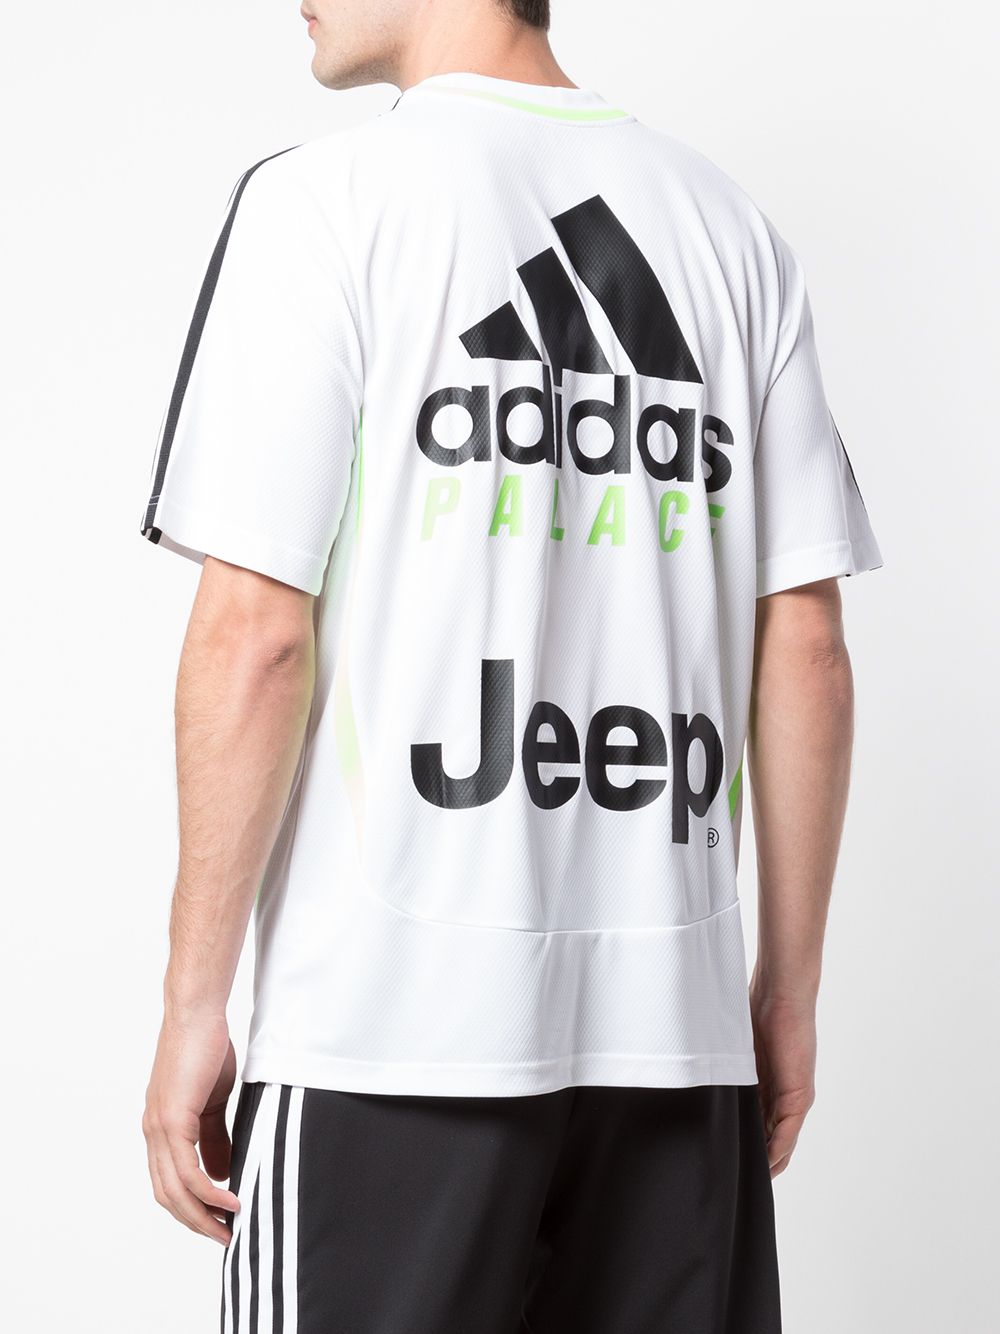 Palace Camiseta Palace Juventus Adidas - Farfetch